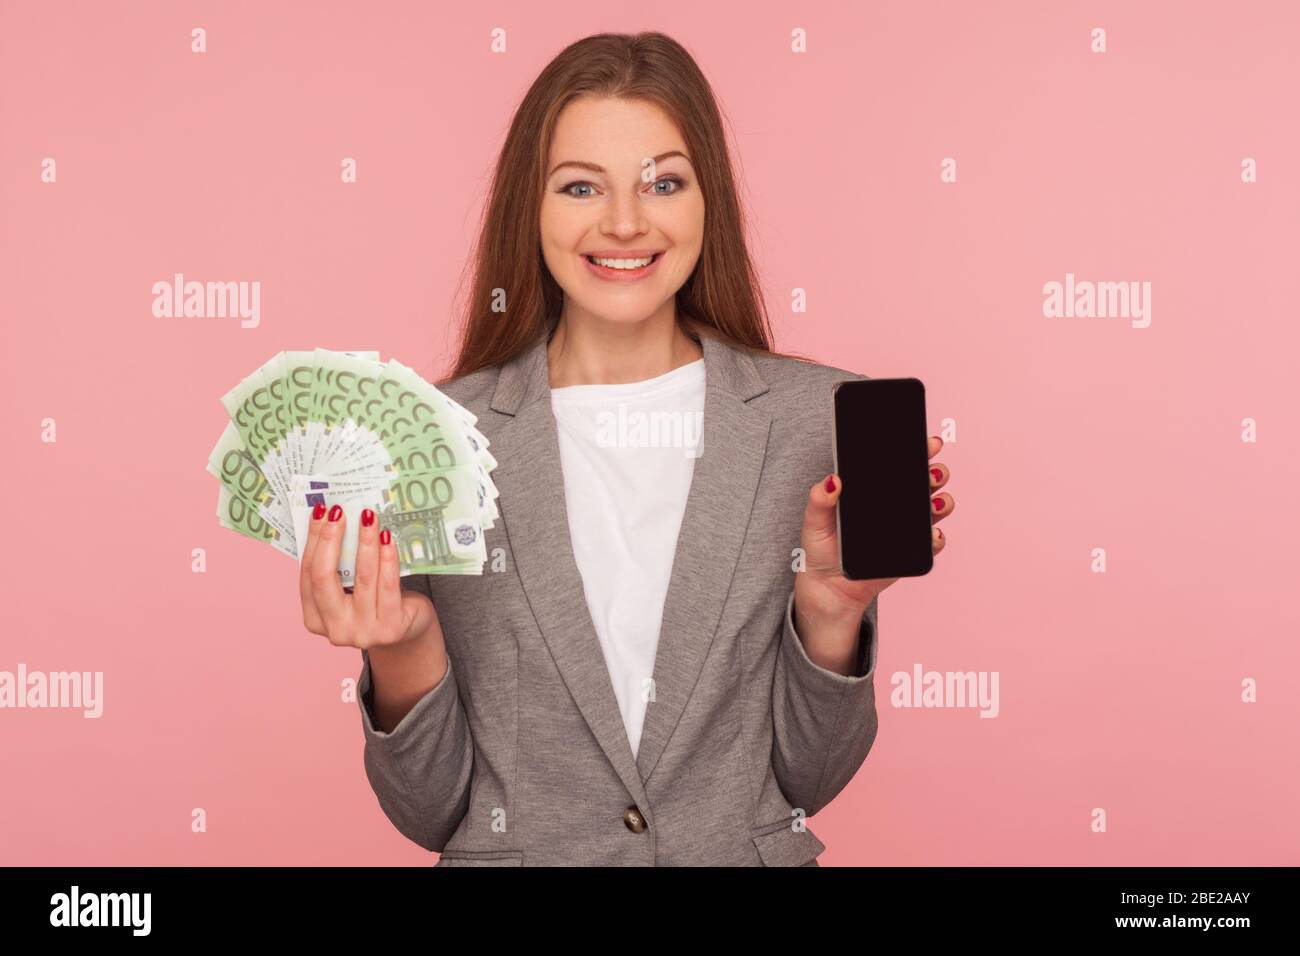 Domanda di prestito, richiedere online. Ritratto di felice donna d'affari sorridente in giacca in abito con banconote in euro e cellulare, soddisfatto con il divieto di telefonia mobile Foto Stock